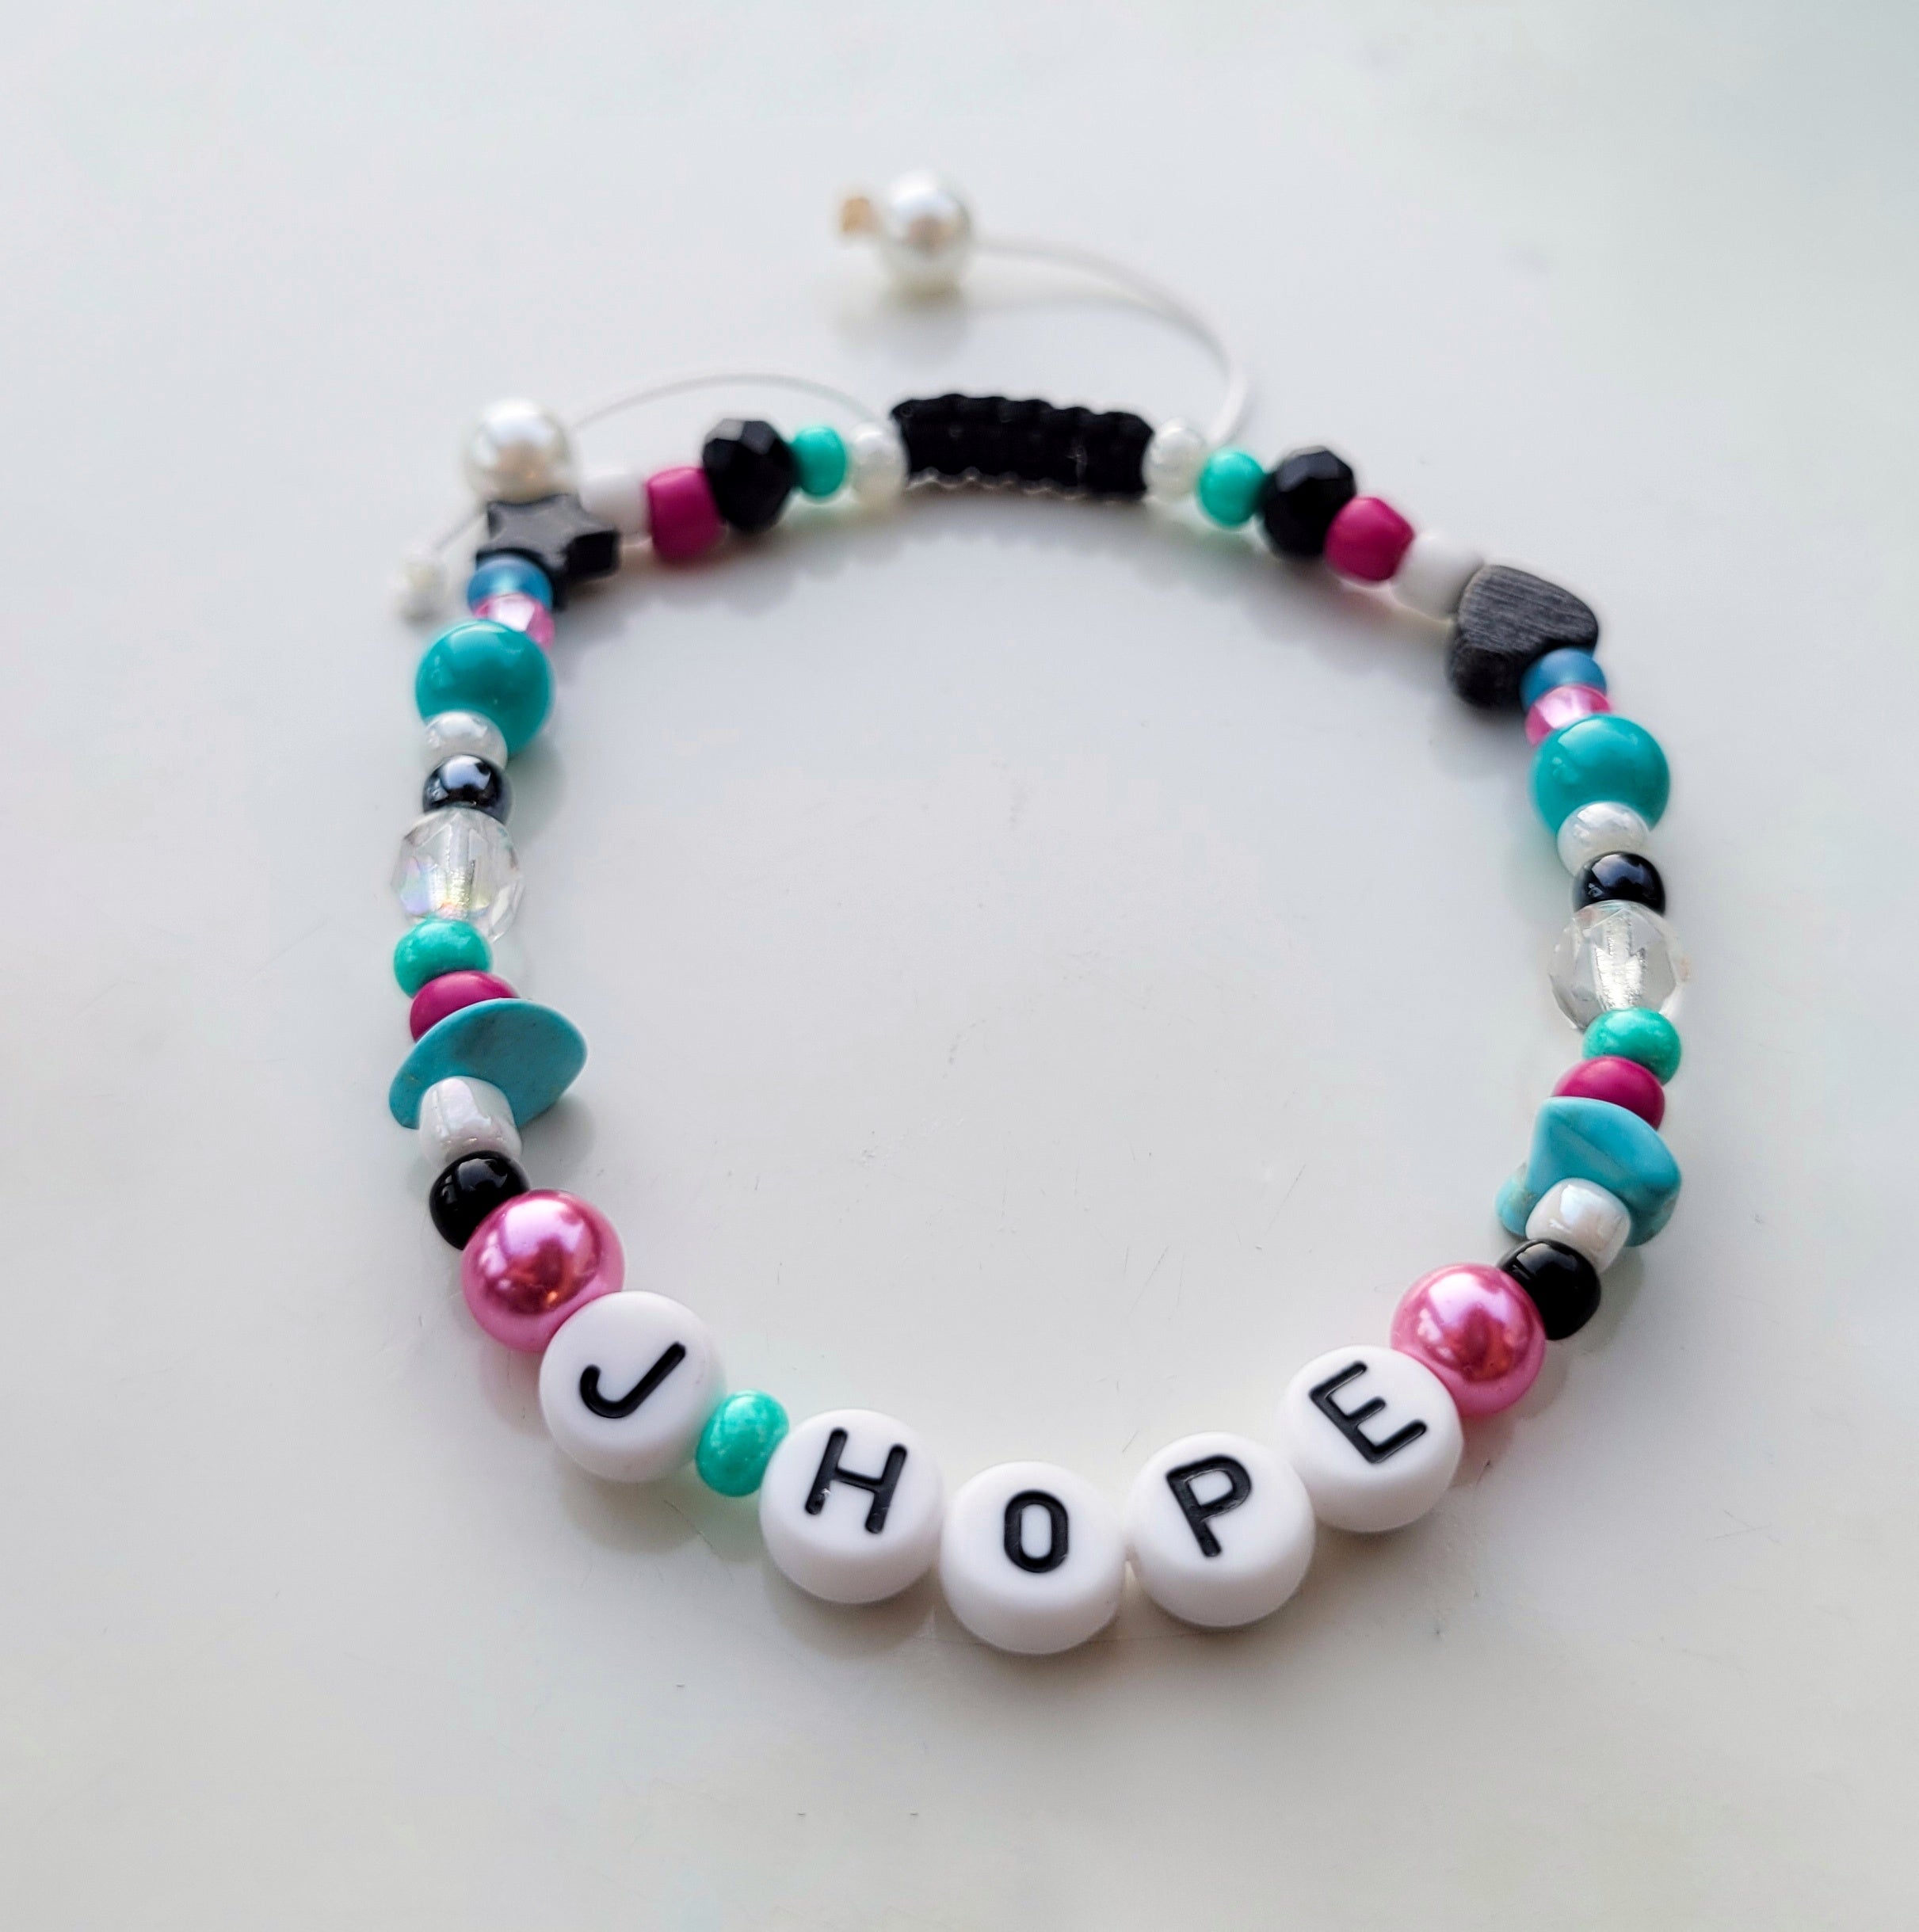 HOPE INSPIRED BRACELET – Hope Inspired